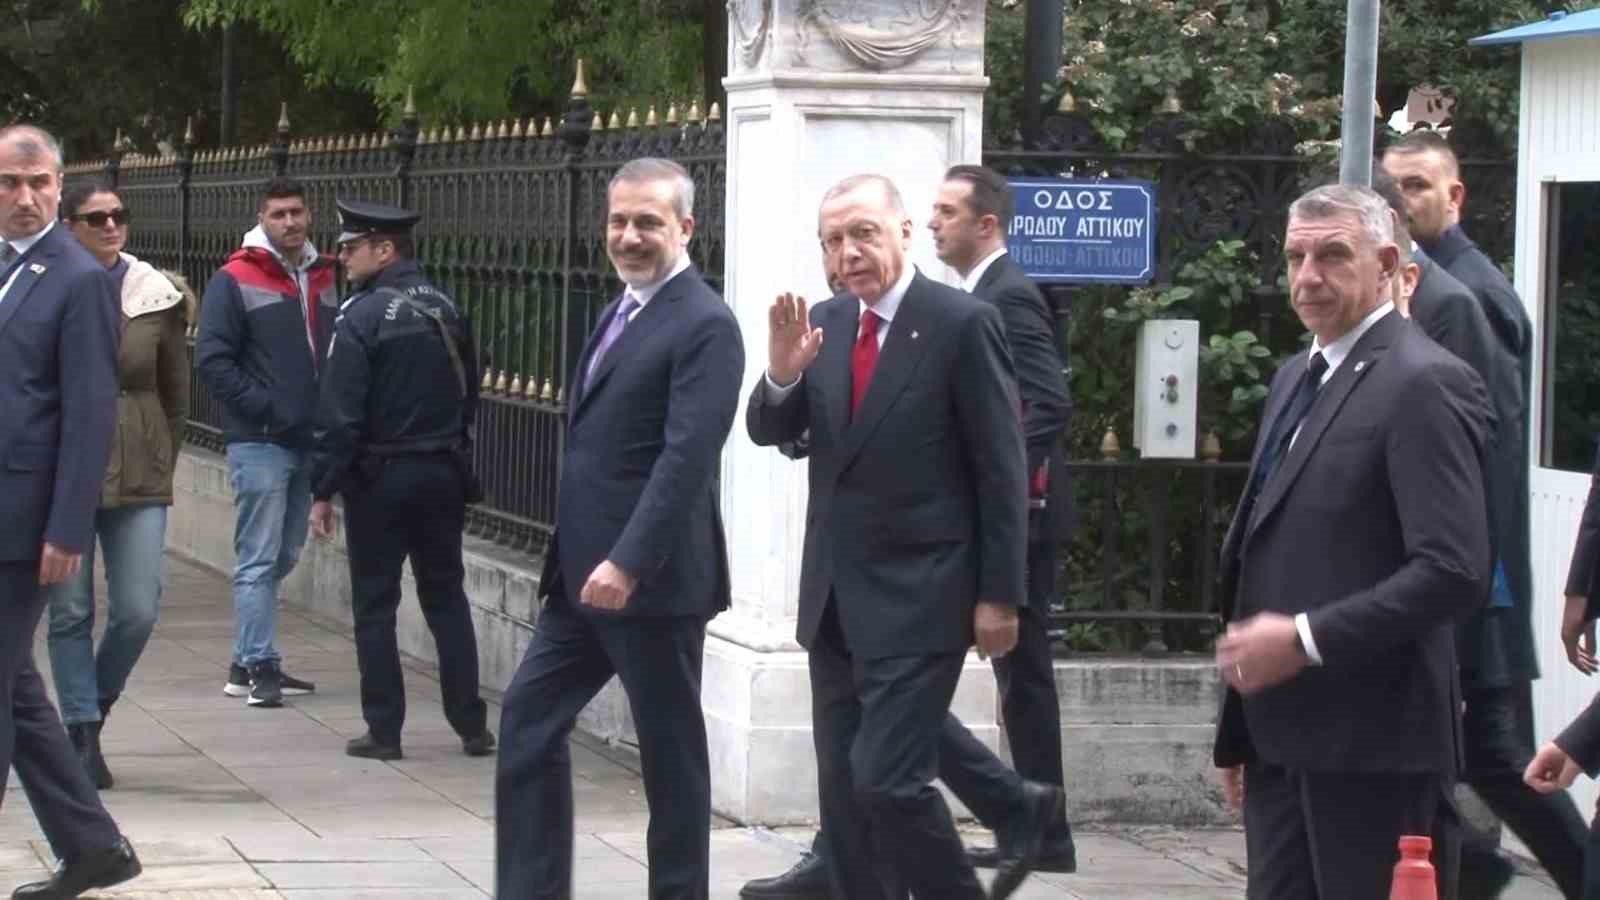 Cumhurbaşkanı Erdoğan Yunan gazetecinin “Hoş geldiniz” sözlerini yanıtsız bırakmadı